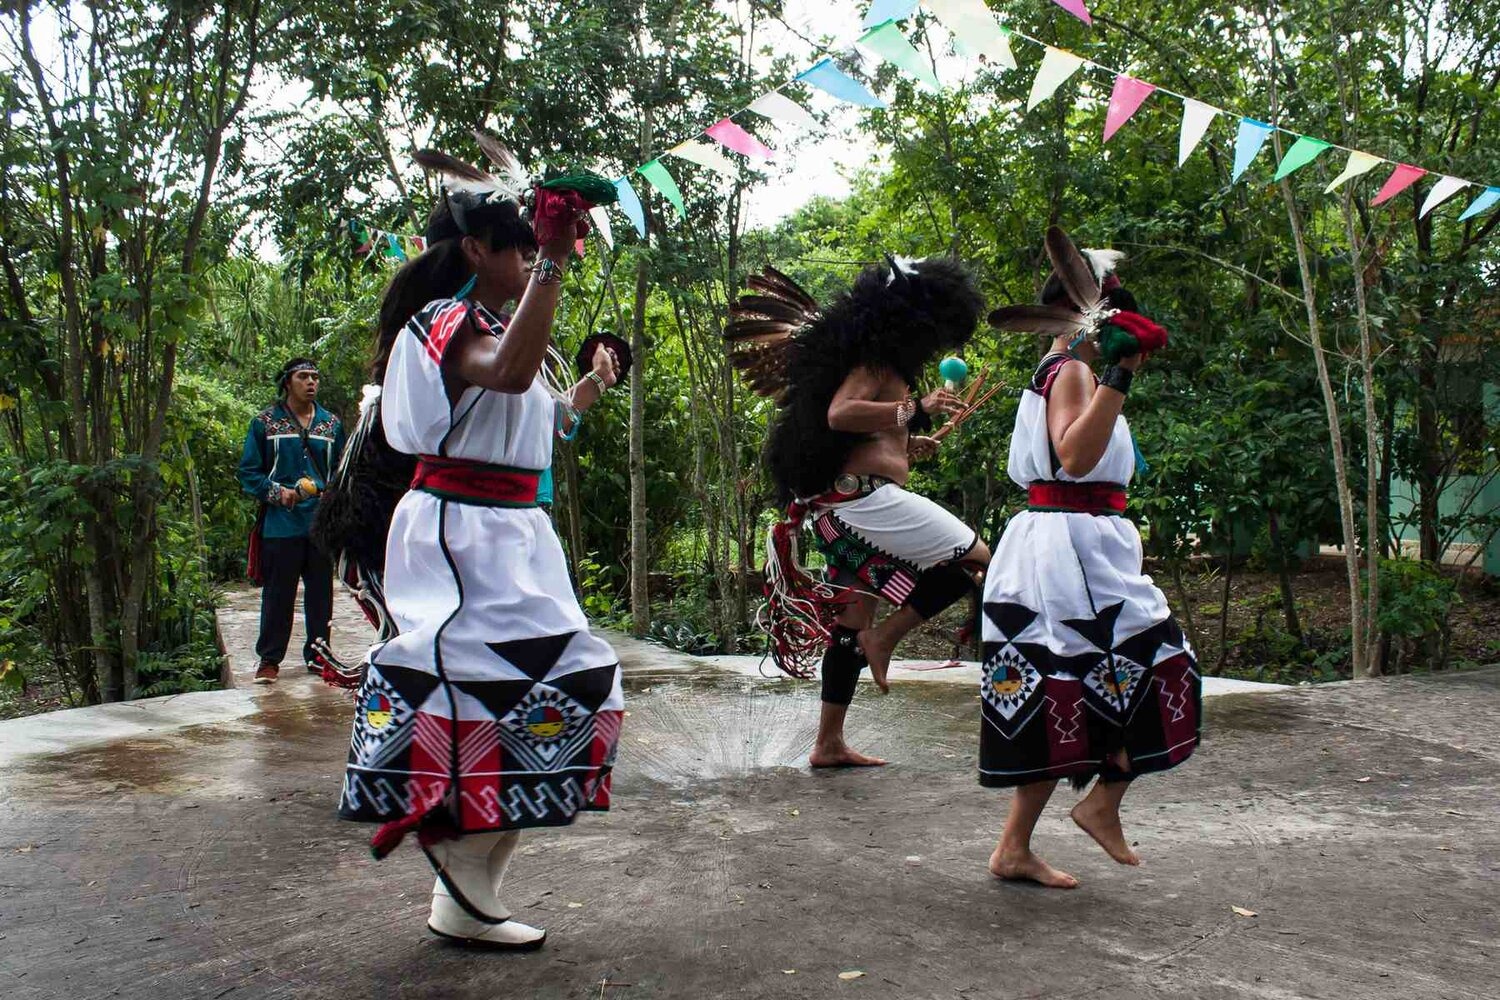  - Pueblo youth dance “Buffalo” in Valladolid, Yucatan, Mexico. (Photo Credit: Julián Cruz Cortés, Yakanal)